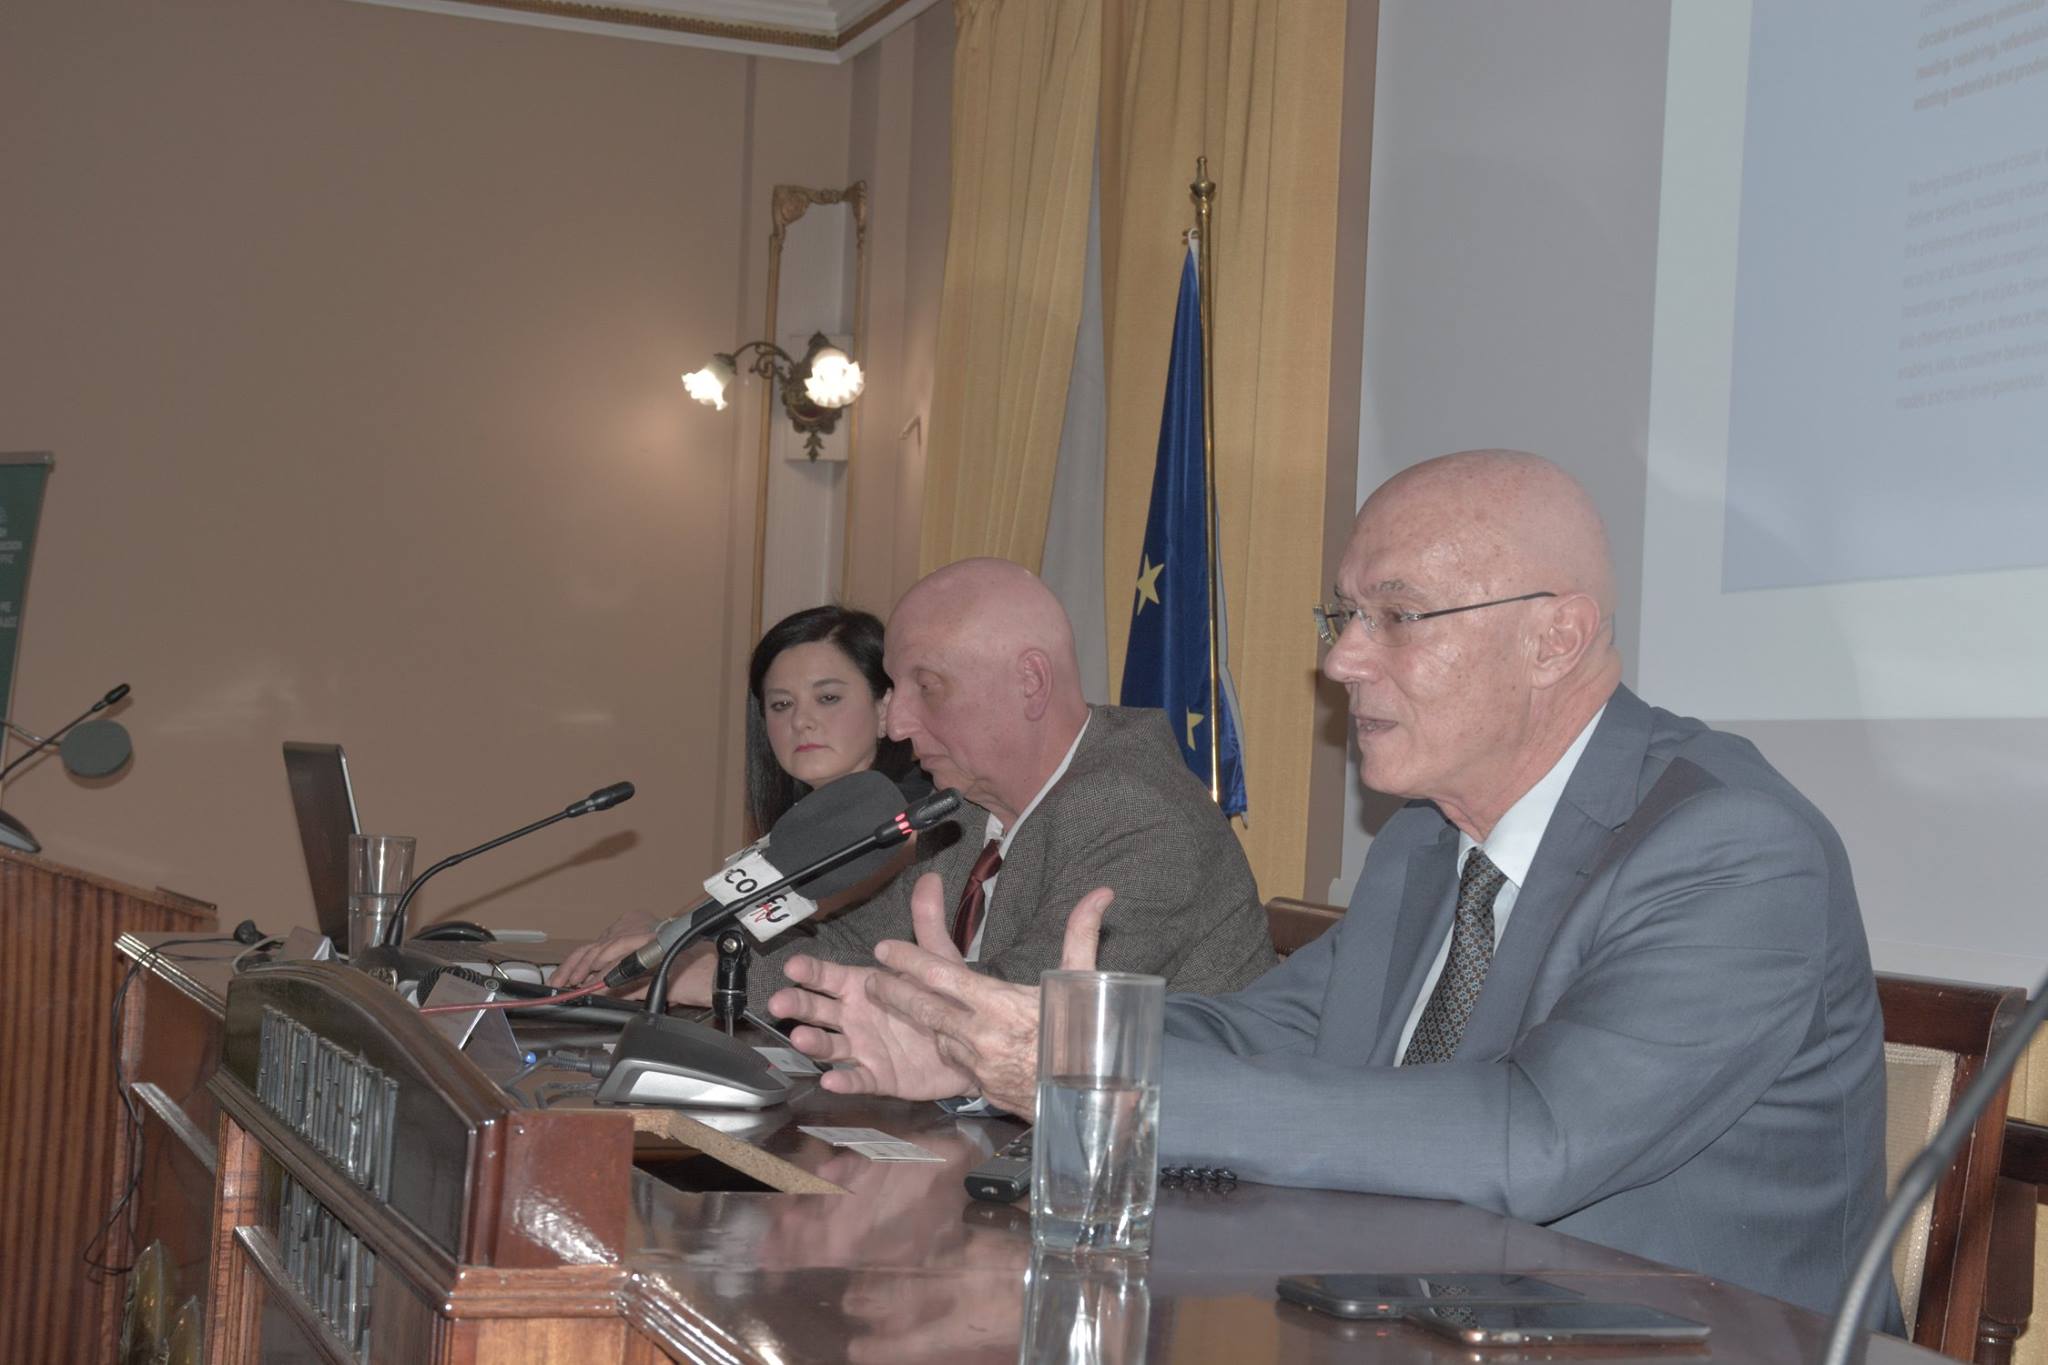 Κεντρικός ομιλητής στην εκδήλωση με θέμα «Κυκλική οικονομία και μικρομεσαίες επιχειρήσεις στην Κέρκυρα», που διοργάνωσε το Επιμελητήριο σε συνεργασία με το Δίκτυο Νησιωτικών Επιμελητηρίων Ελλάδος και την Ένωση Ξενοδόχων Κέρκυρας